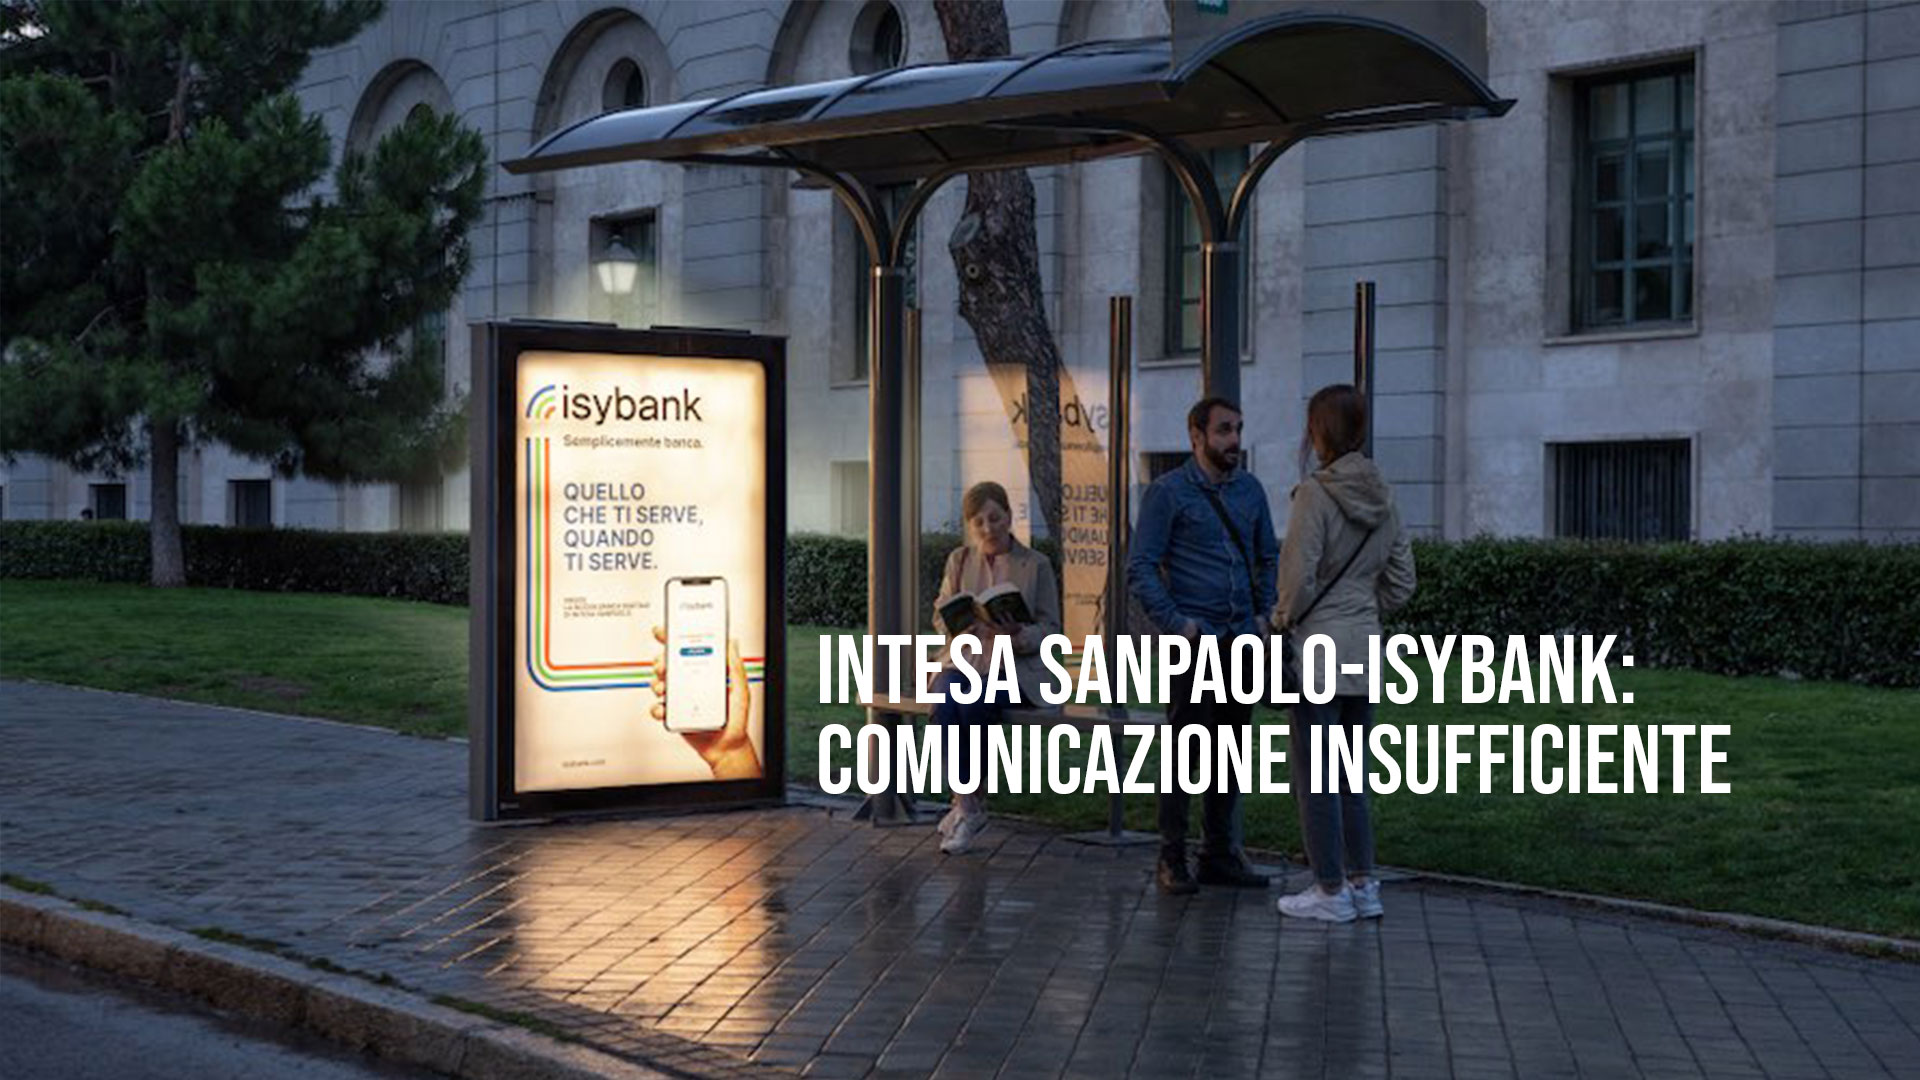 Intesa Sanpaolo-Isybank: Comunicazione insufficiente&quot;